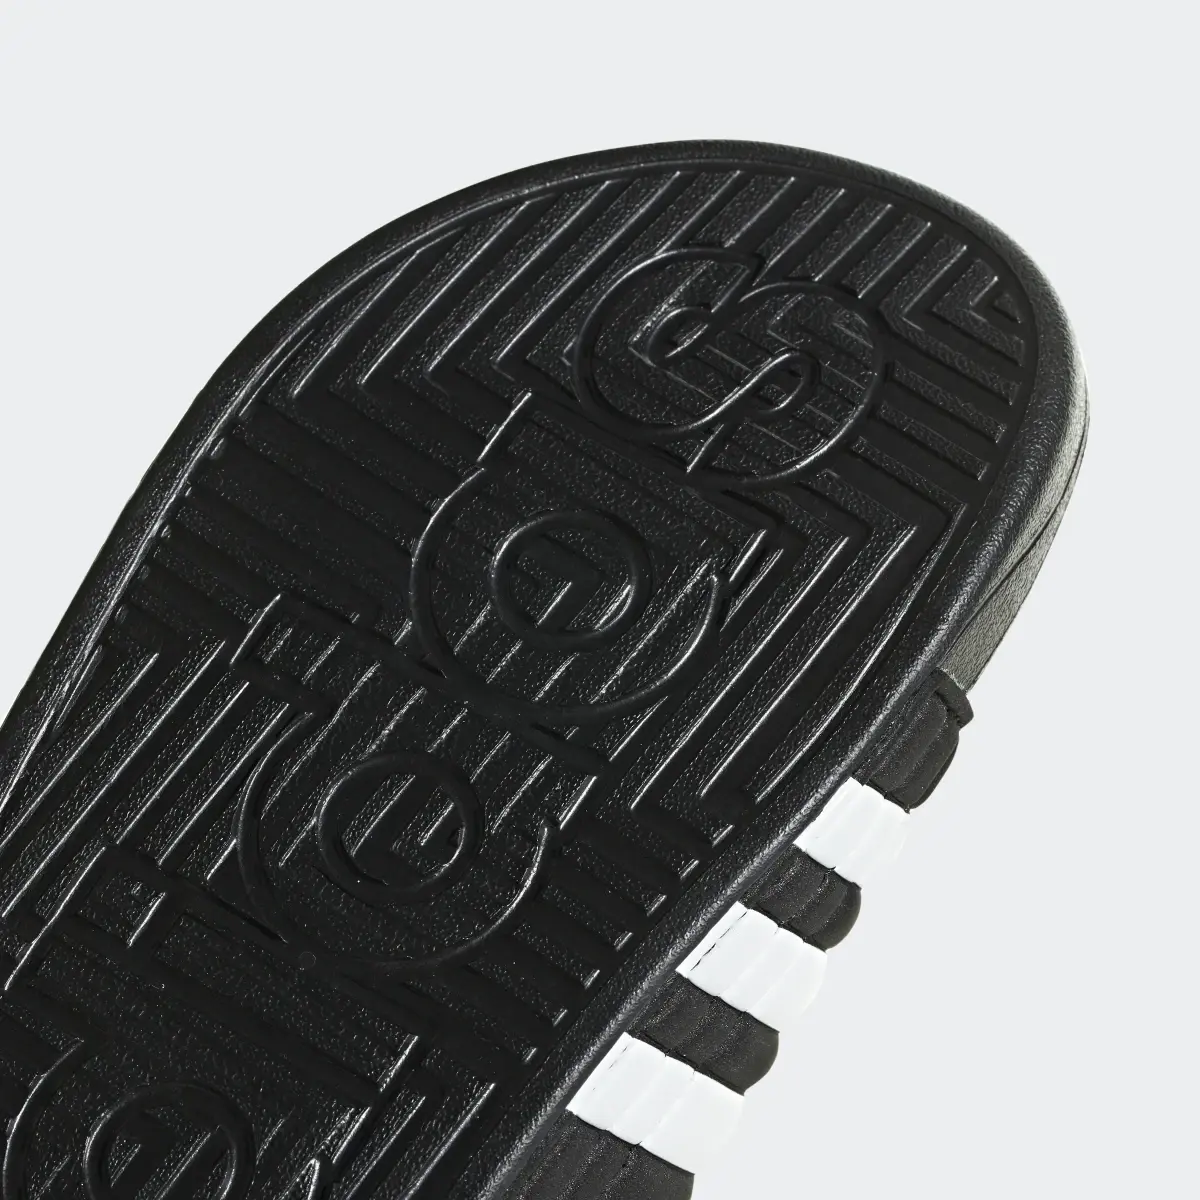 Adidas Claquette Adissage. 3